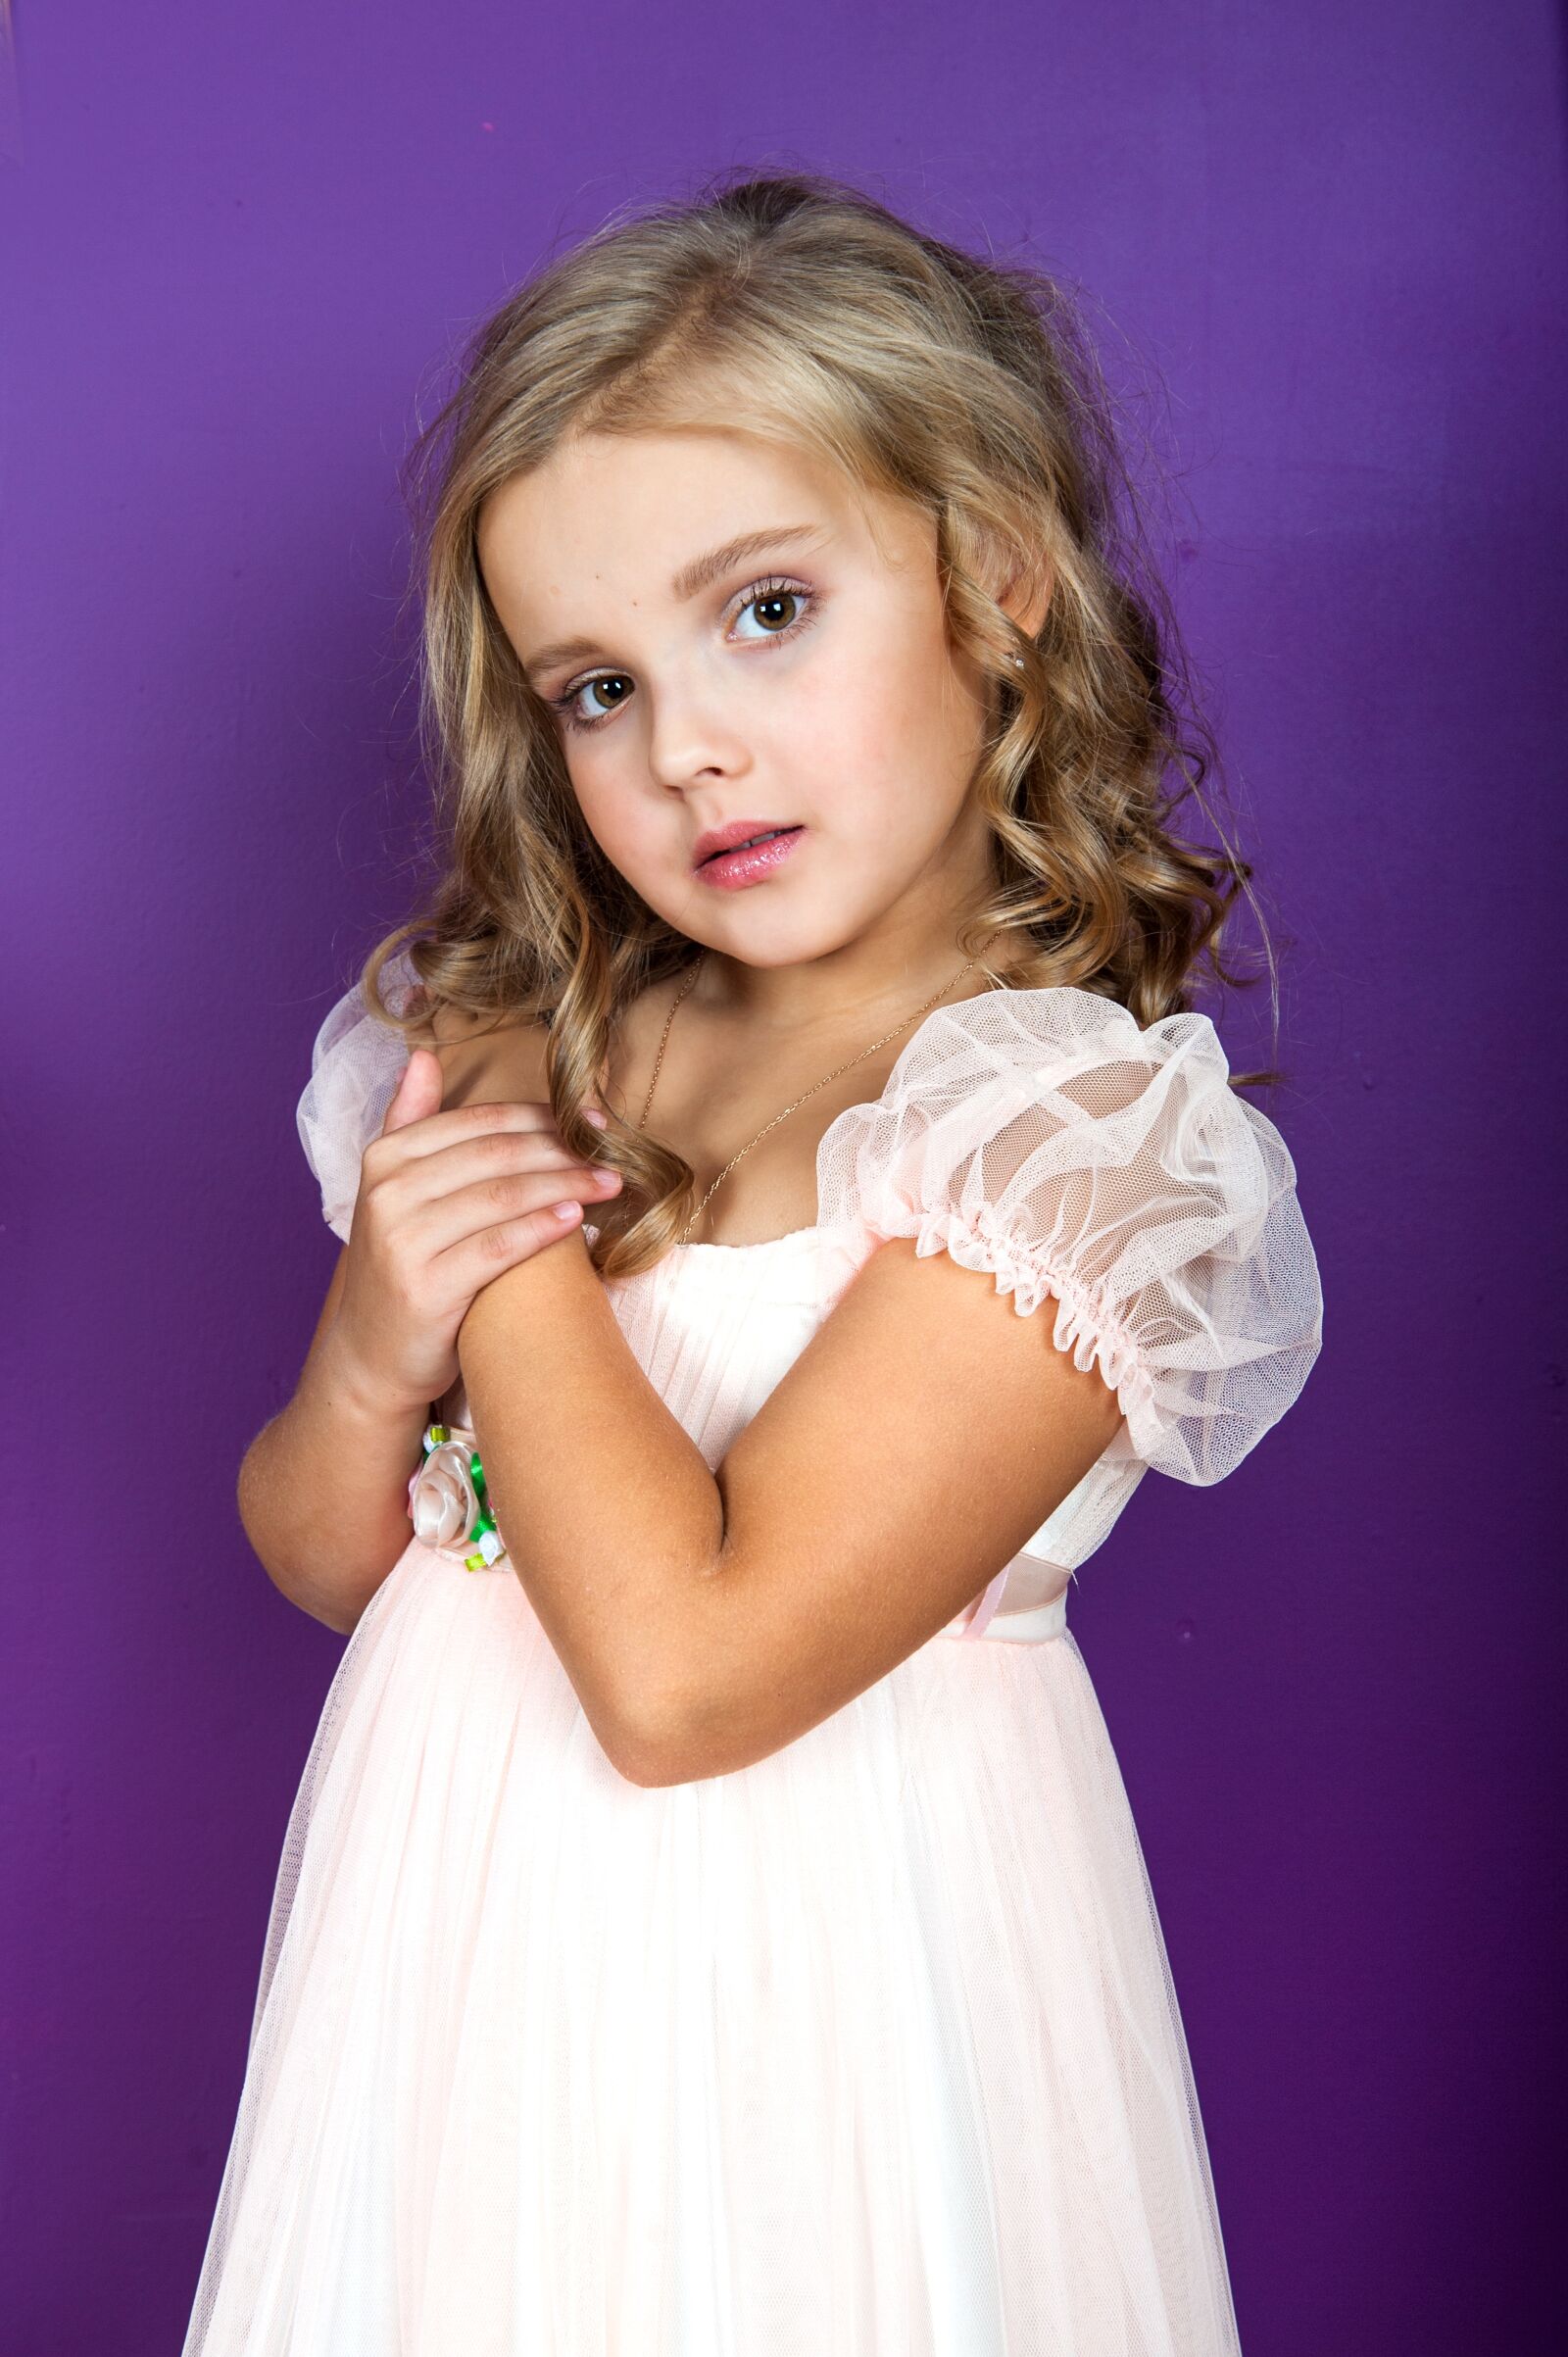 Nikon D700 sample photo. Girl, beautiful, kids photography